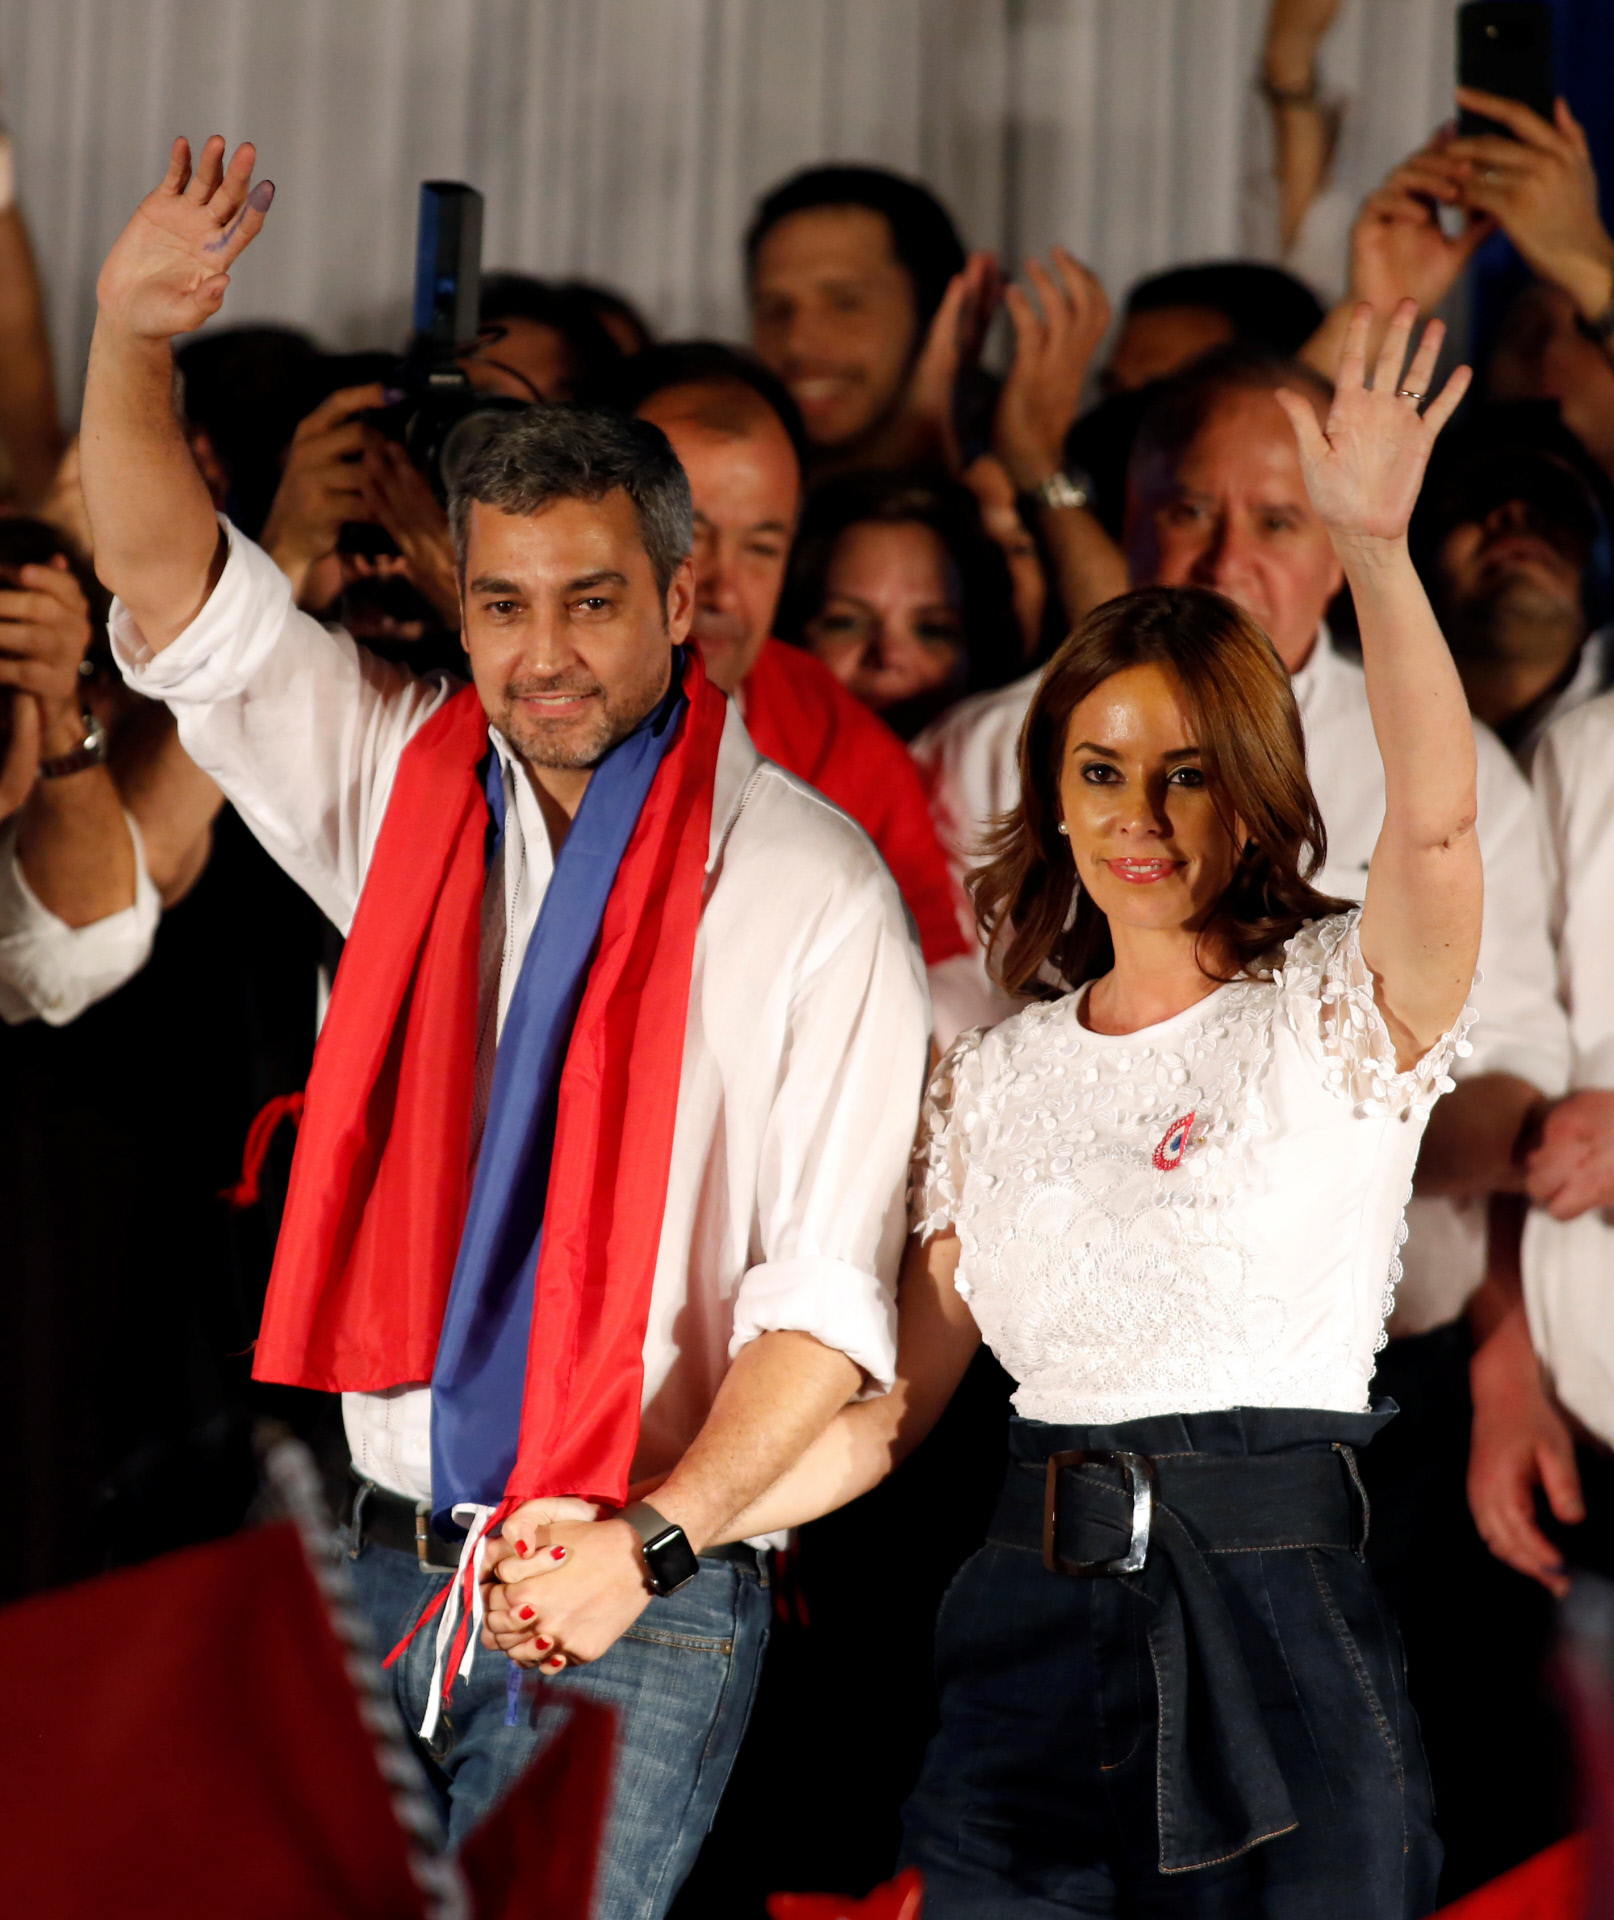 El matrimonio presidencial de Paraguay, Mario Abdo y Silvana Lpez.